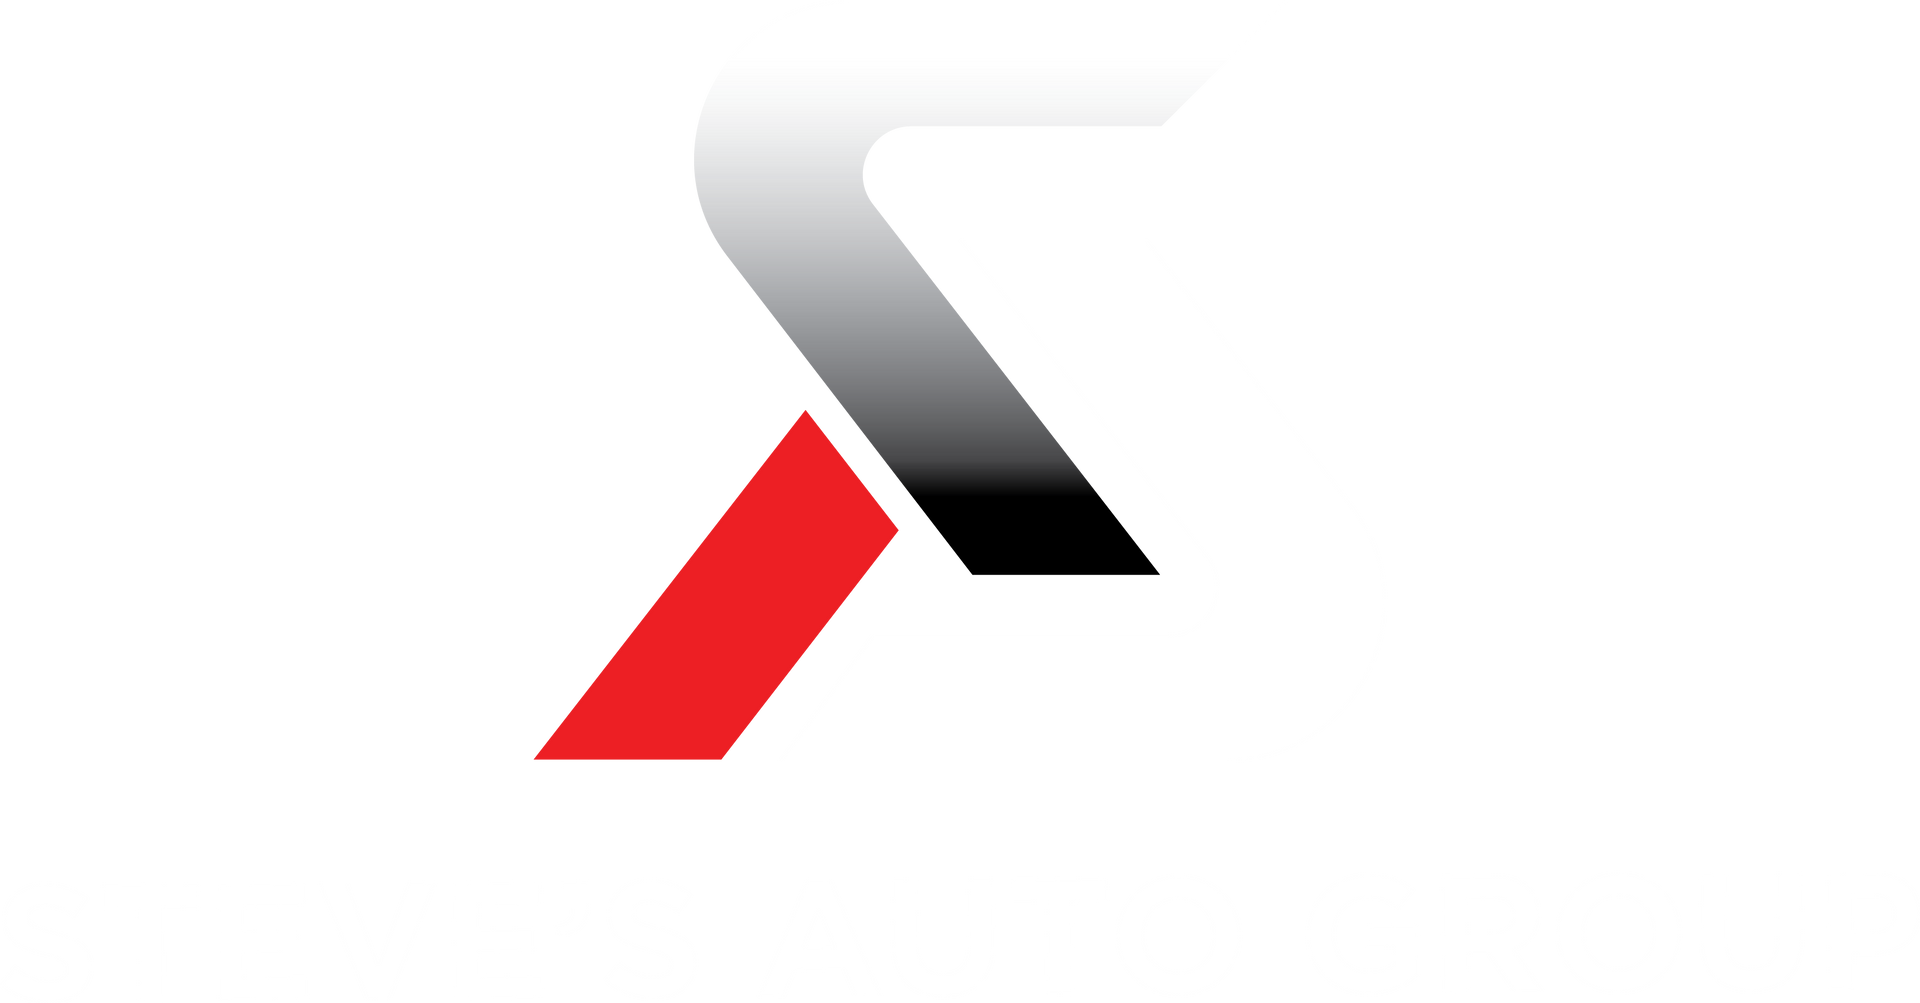 Steve's Auto Group